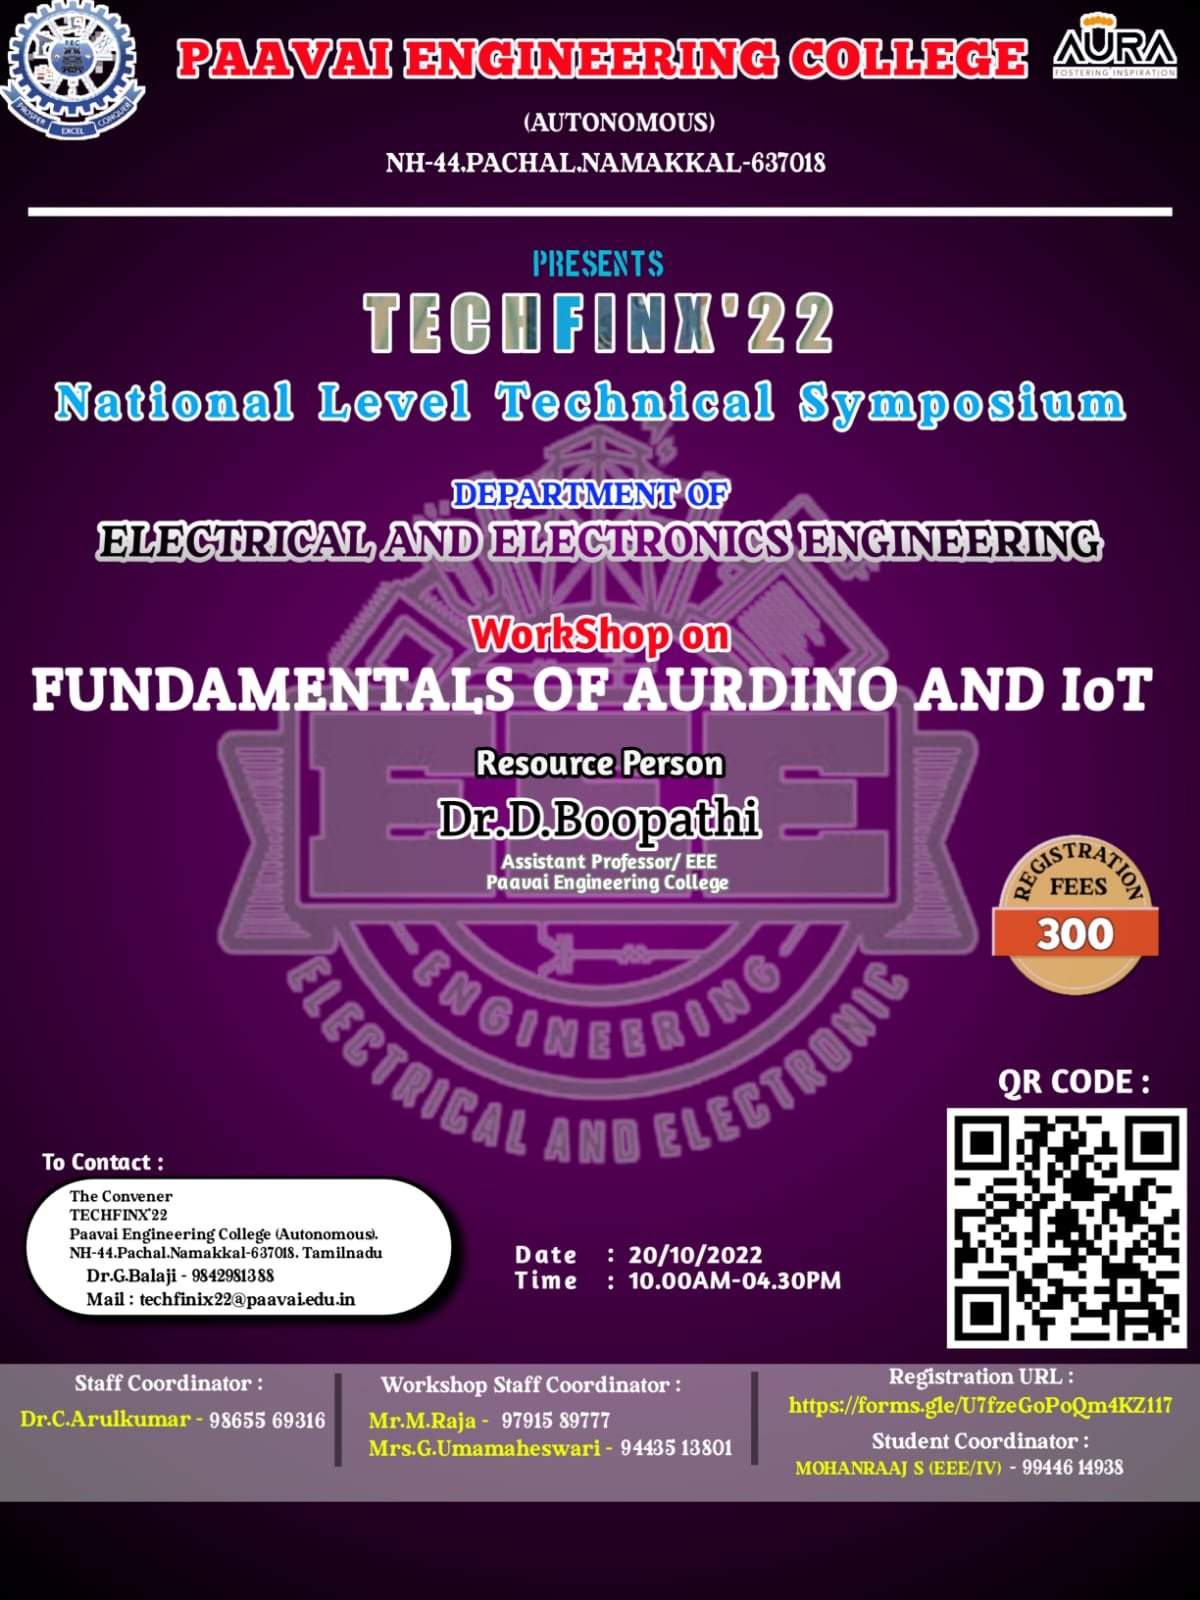 Fundamental of Aurdino and IoT Workshop 2022